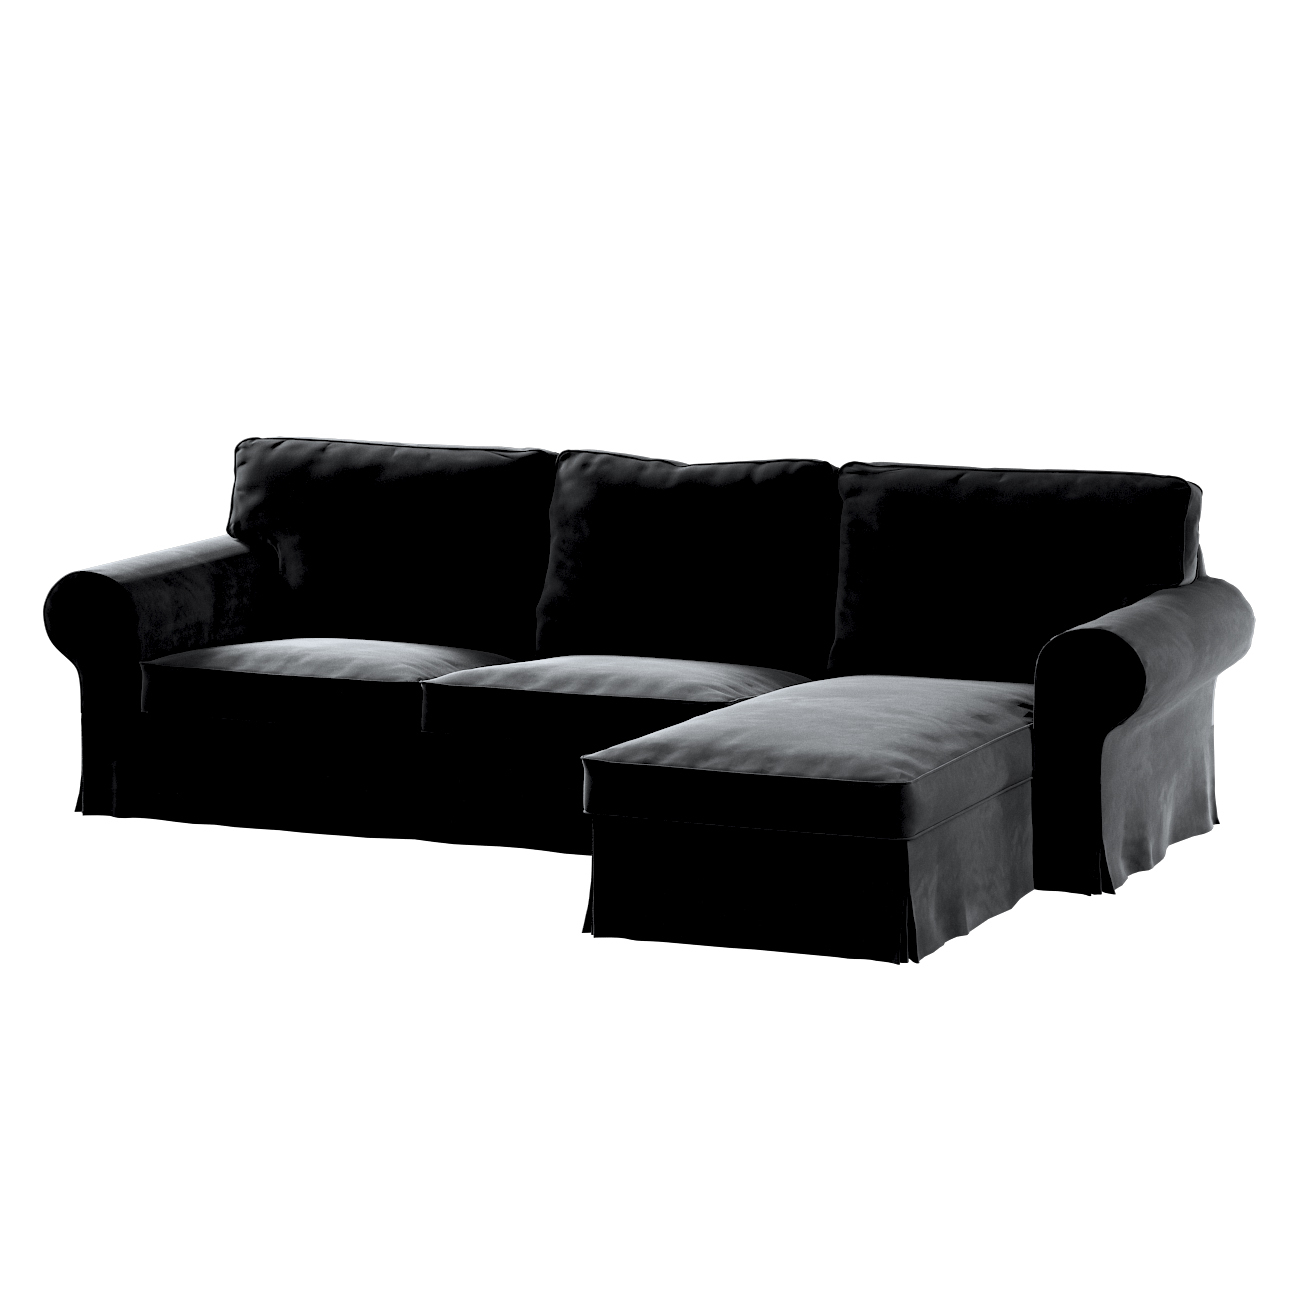 Bezug für Ektorp 2-Sitzer Sofa mit Recamiere, schwarz, Ektorp 2-Sitzer Sofa günstig online kaufen